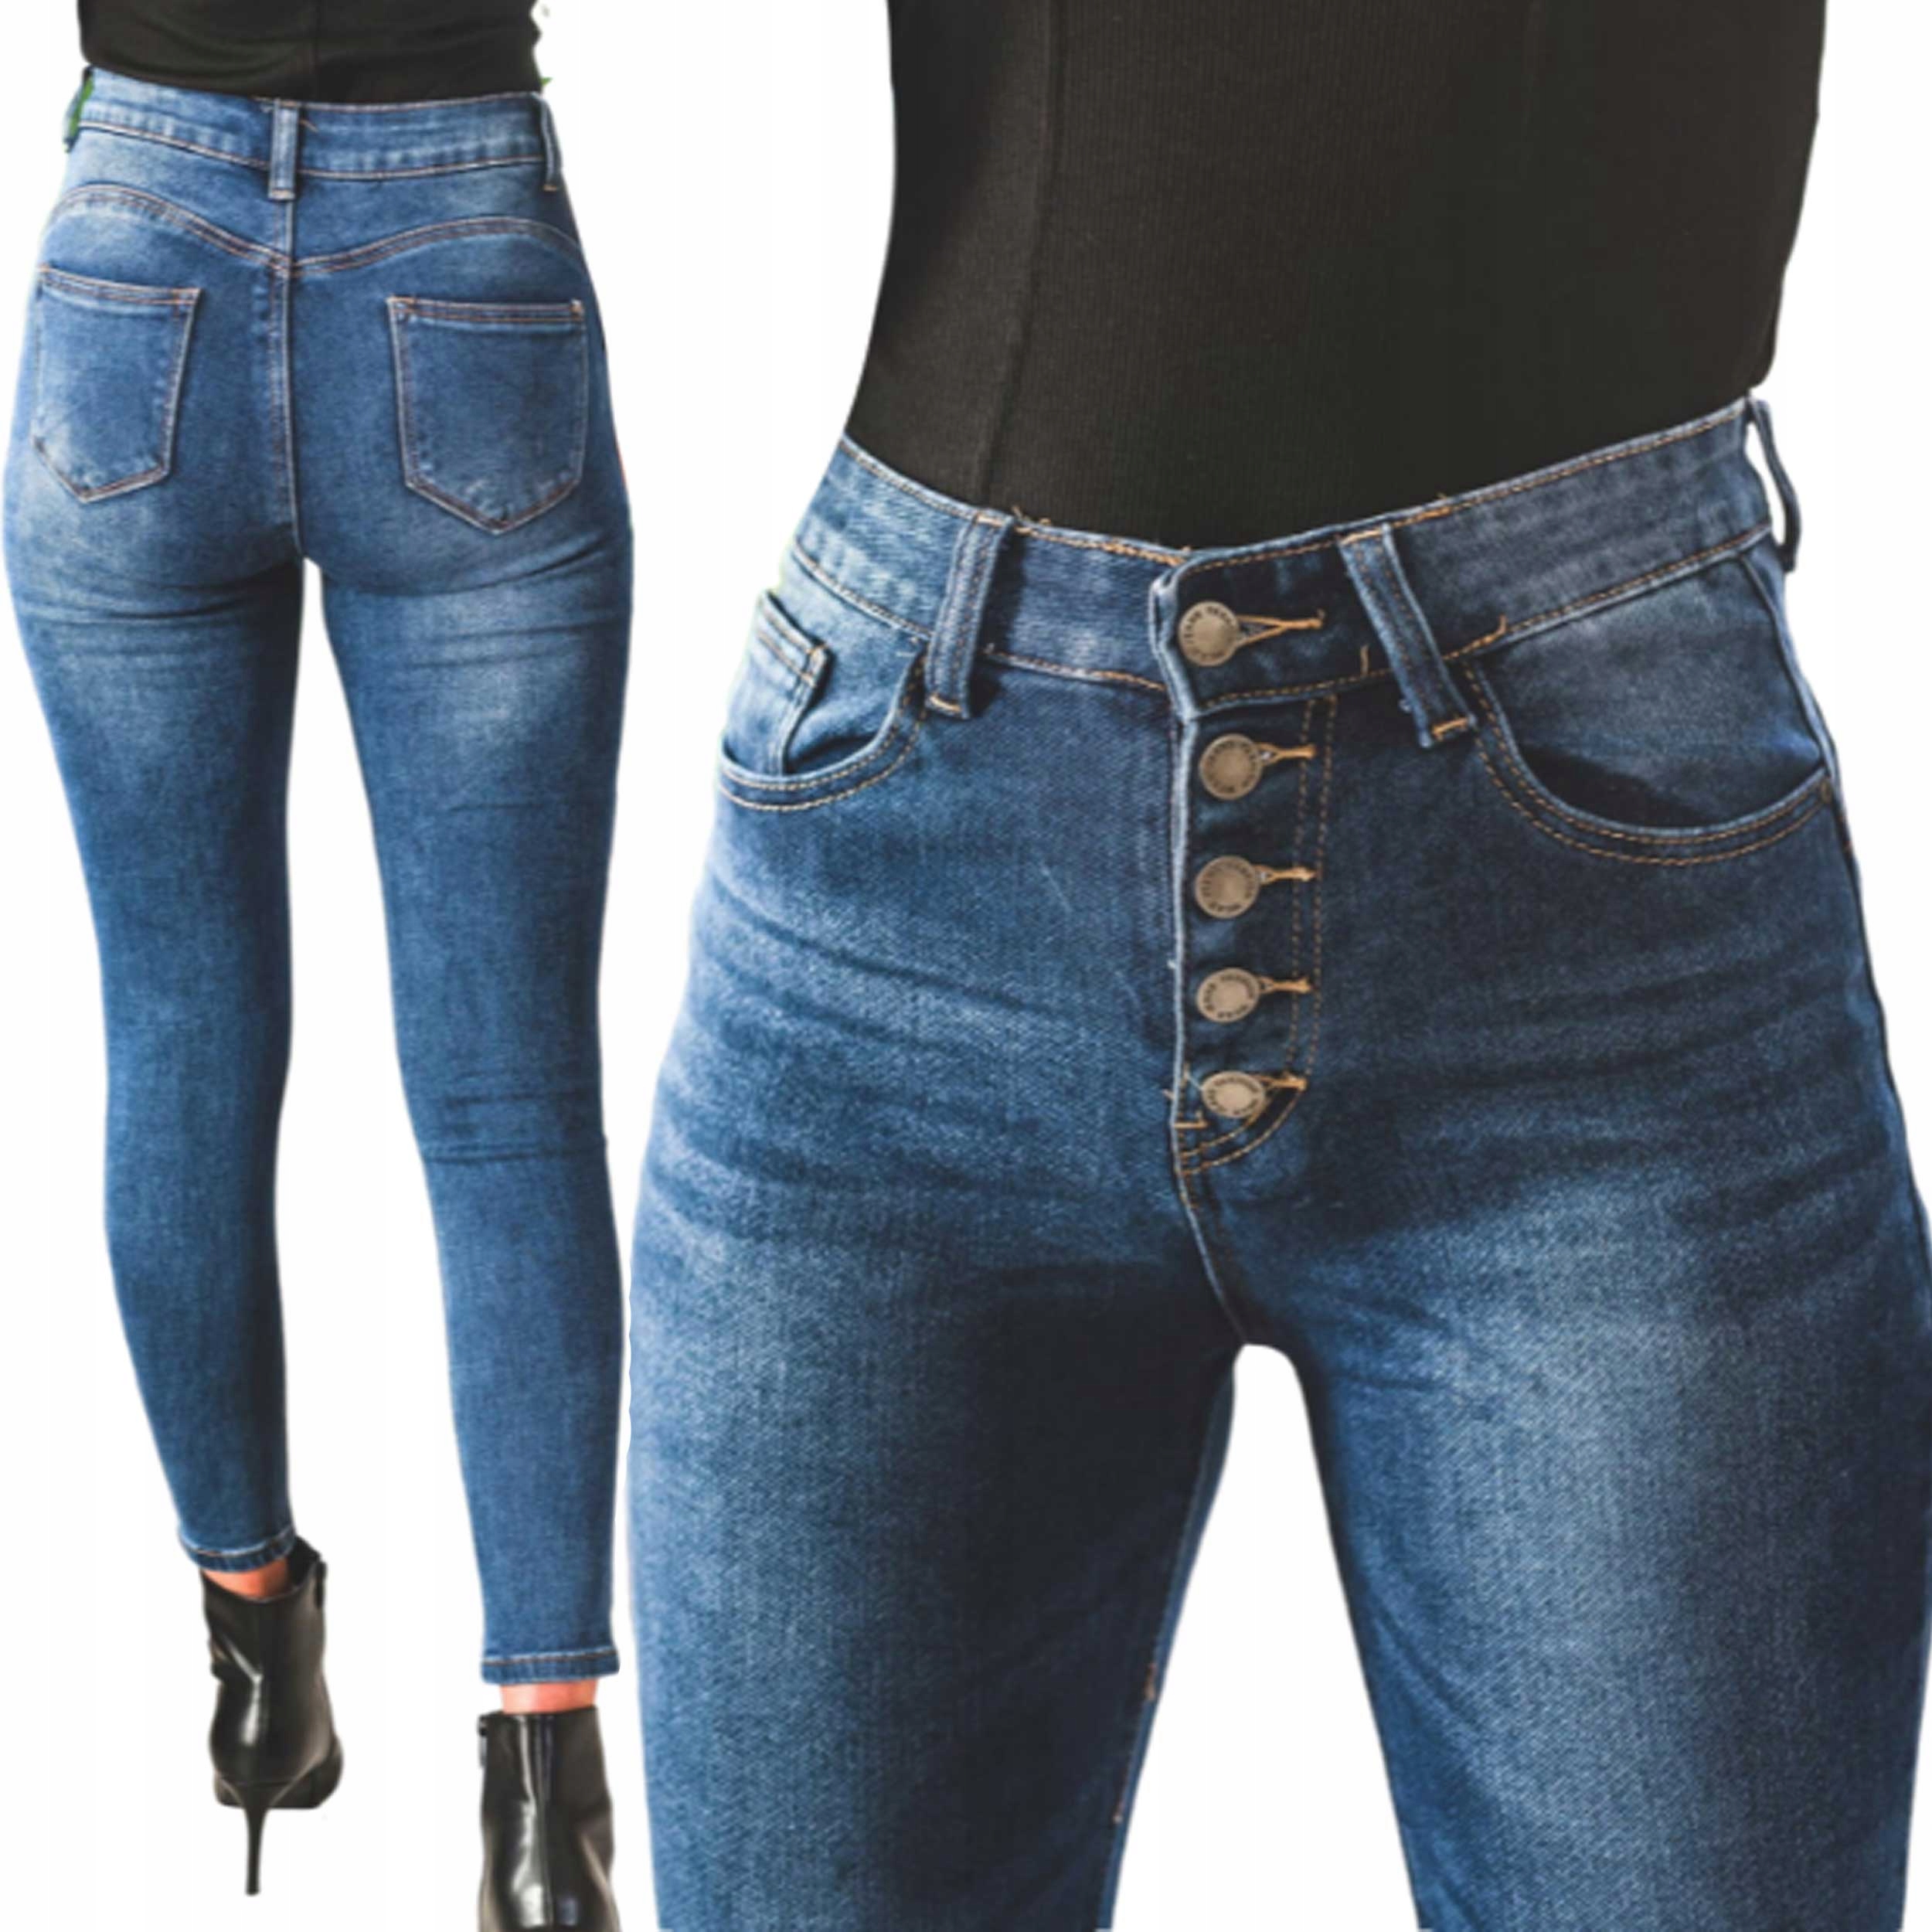 Моделирующие брюки Женские джинсы PUSH UP STATE XL